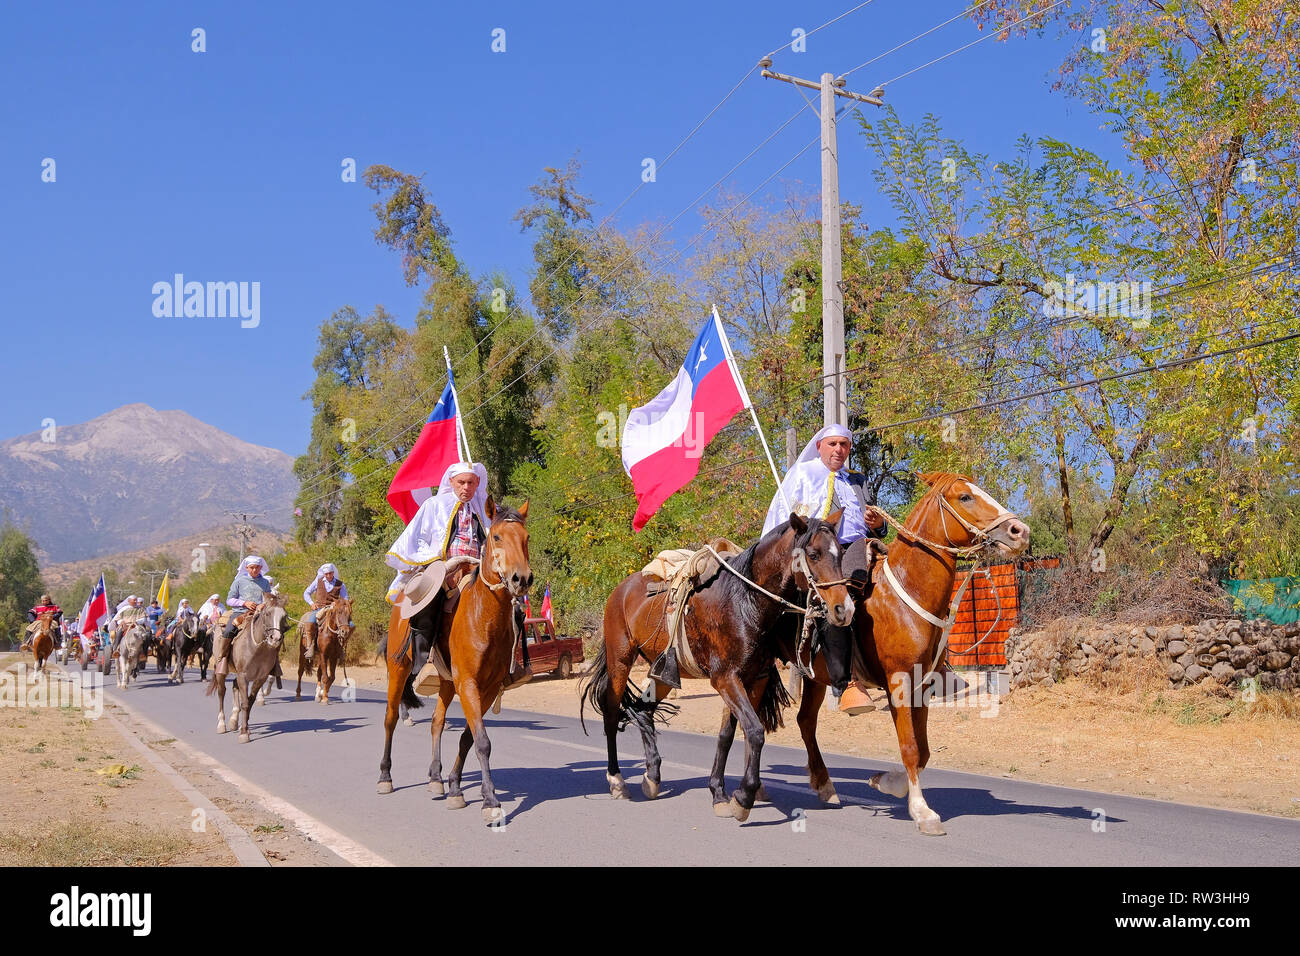 PIRQUE, SANTIAGO DE CHILE, APRIL 8, 2018: Riders at the Fiesta De Cuasimodo festival in Pirque, Chile on April 8, 2018 Stock Photo